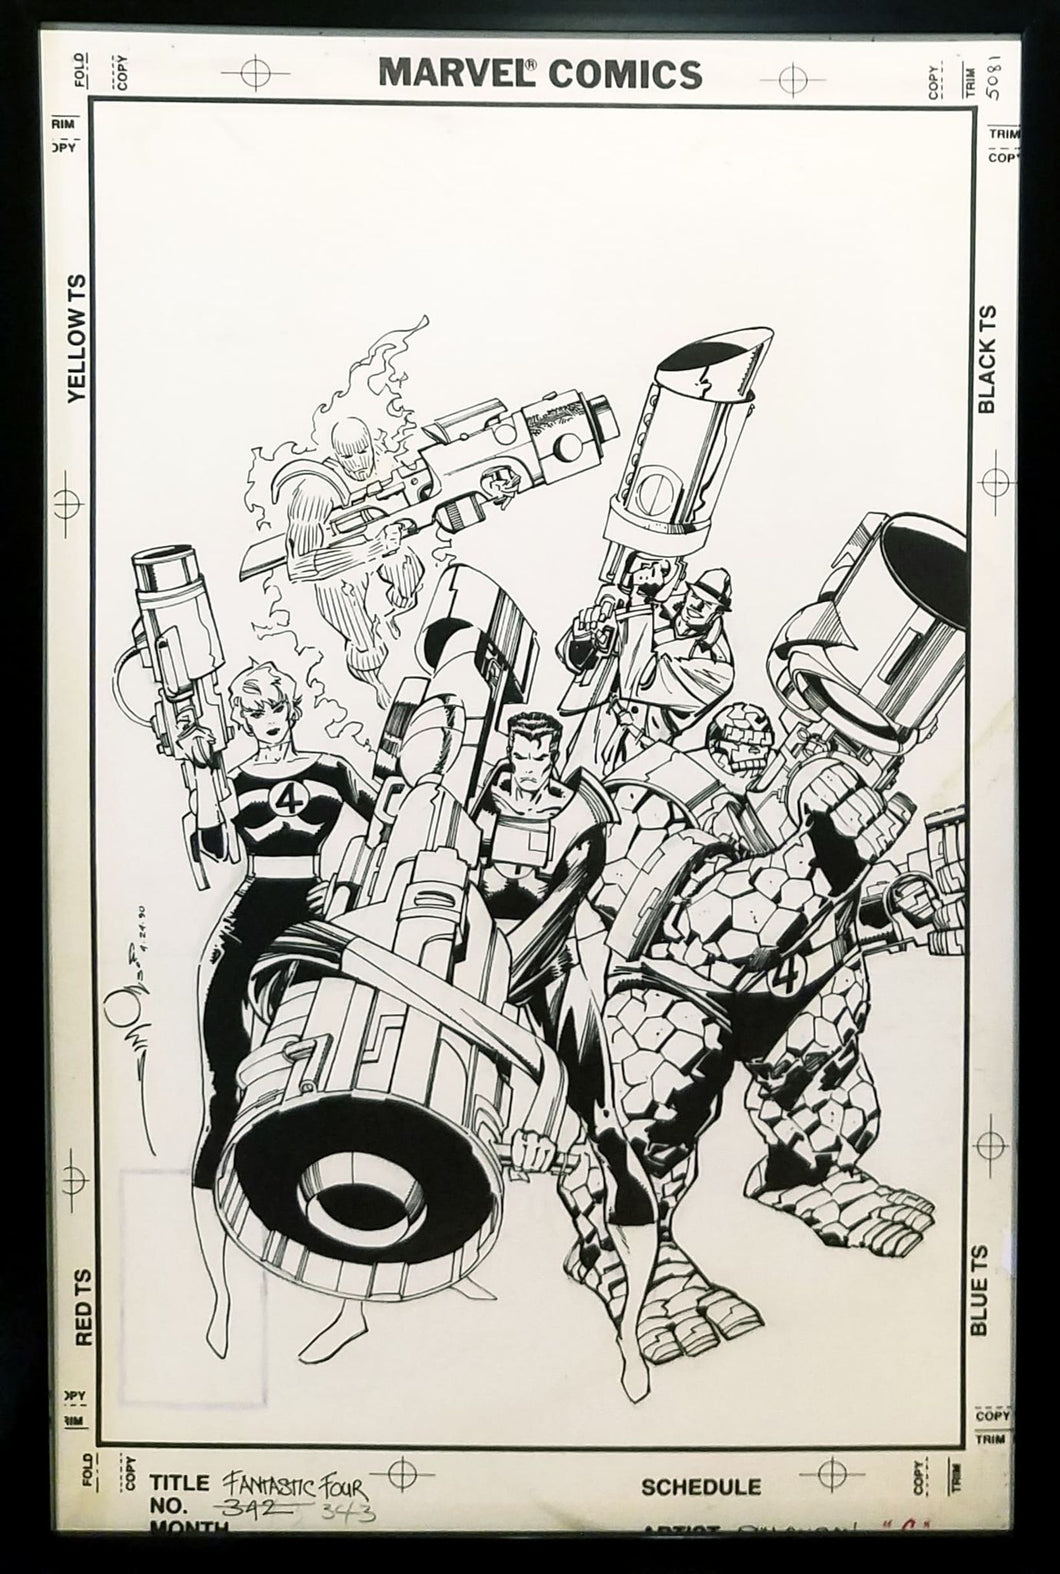 Fantastic Four #343 by Walt Simonson 11x17 FRAMED Original Art Poster Marvel Comics